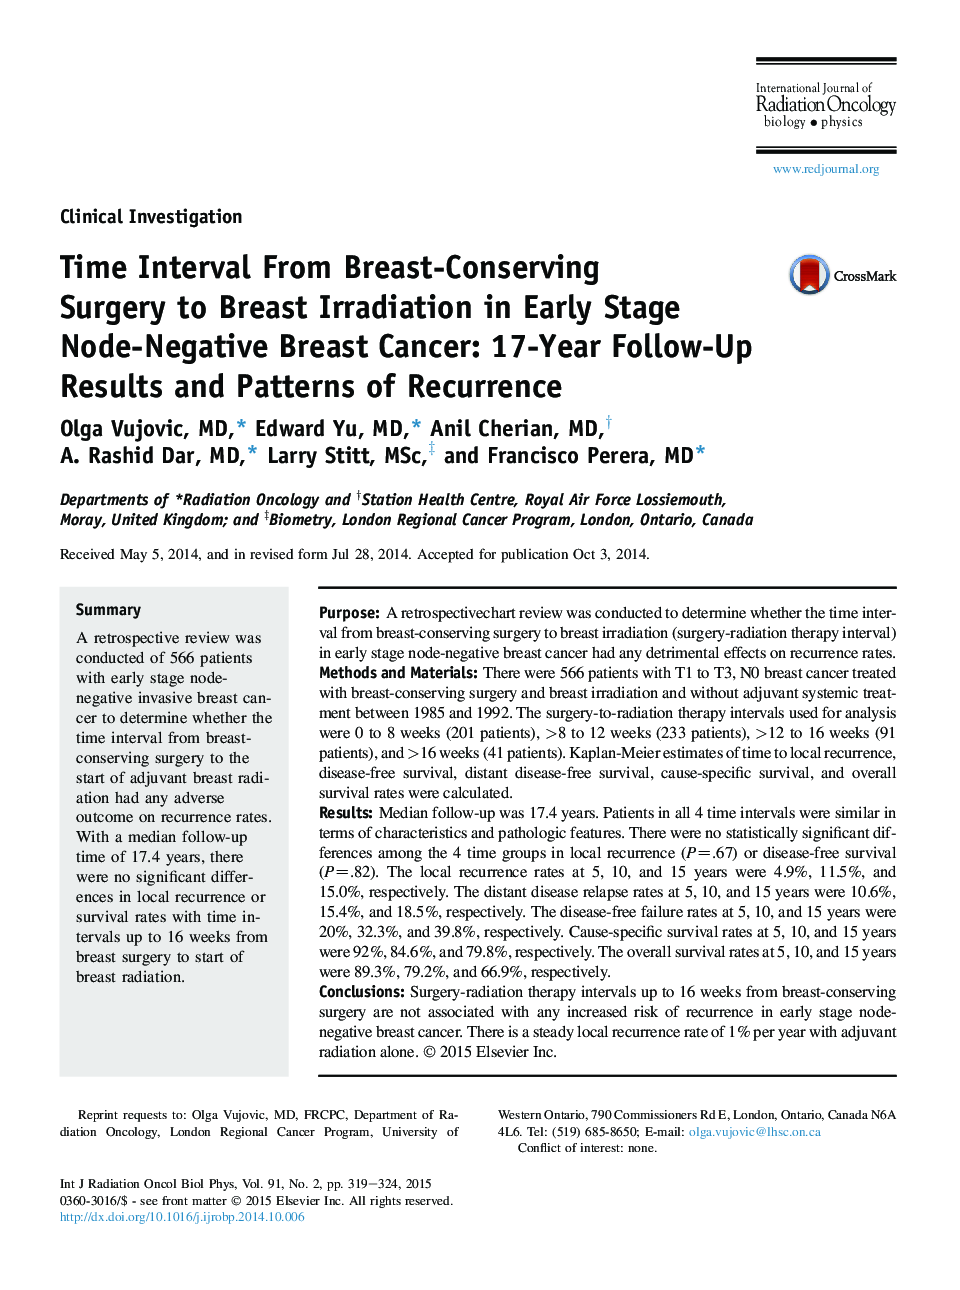 فاصله زمانی از جراحی محافظت از پستان تا تابش پستان در مراحل اولیه سرطان پستان منفرد بوته: نتایج پیگیری 17 ساله و الگوهای عود 